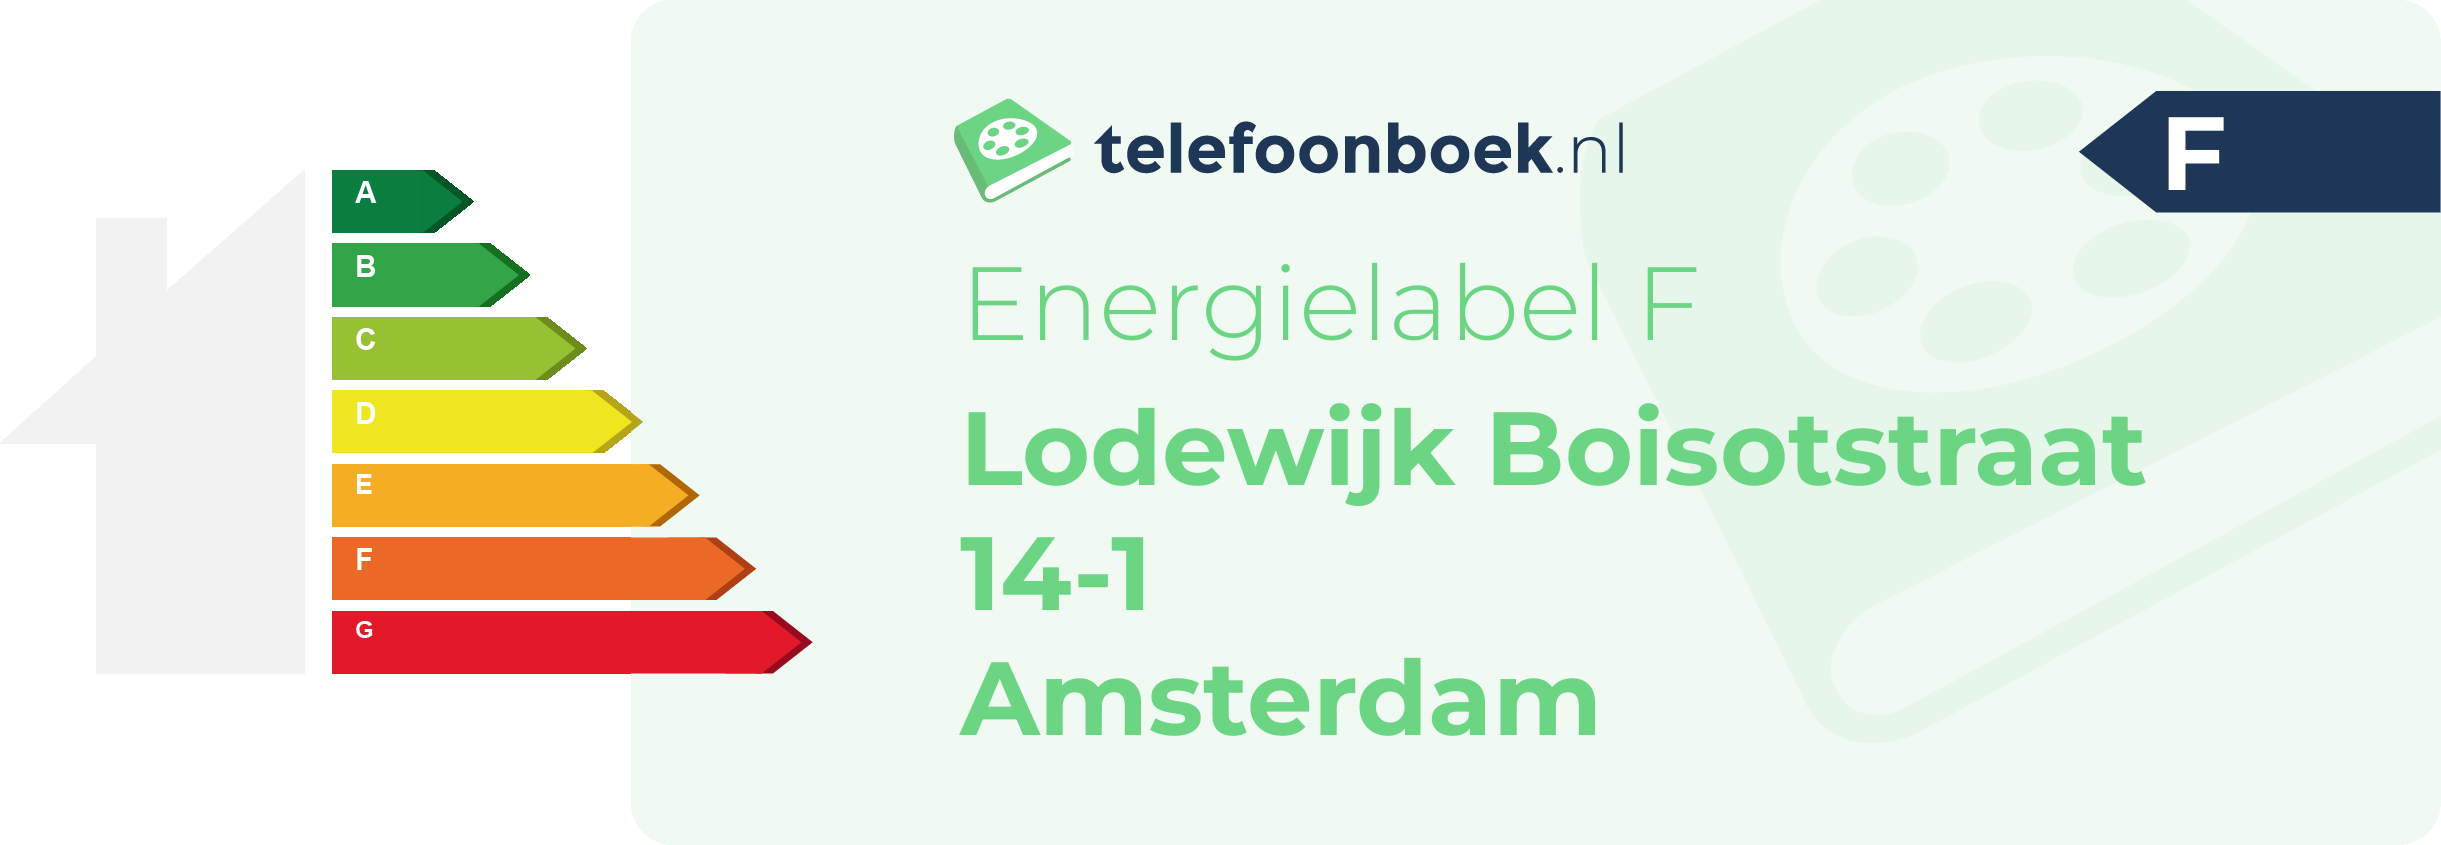 Energielabel Lodewijk Boisotstraat 14-1 Amsterdam